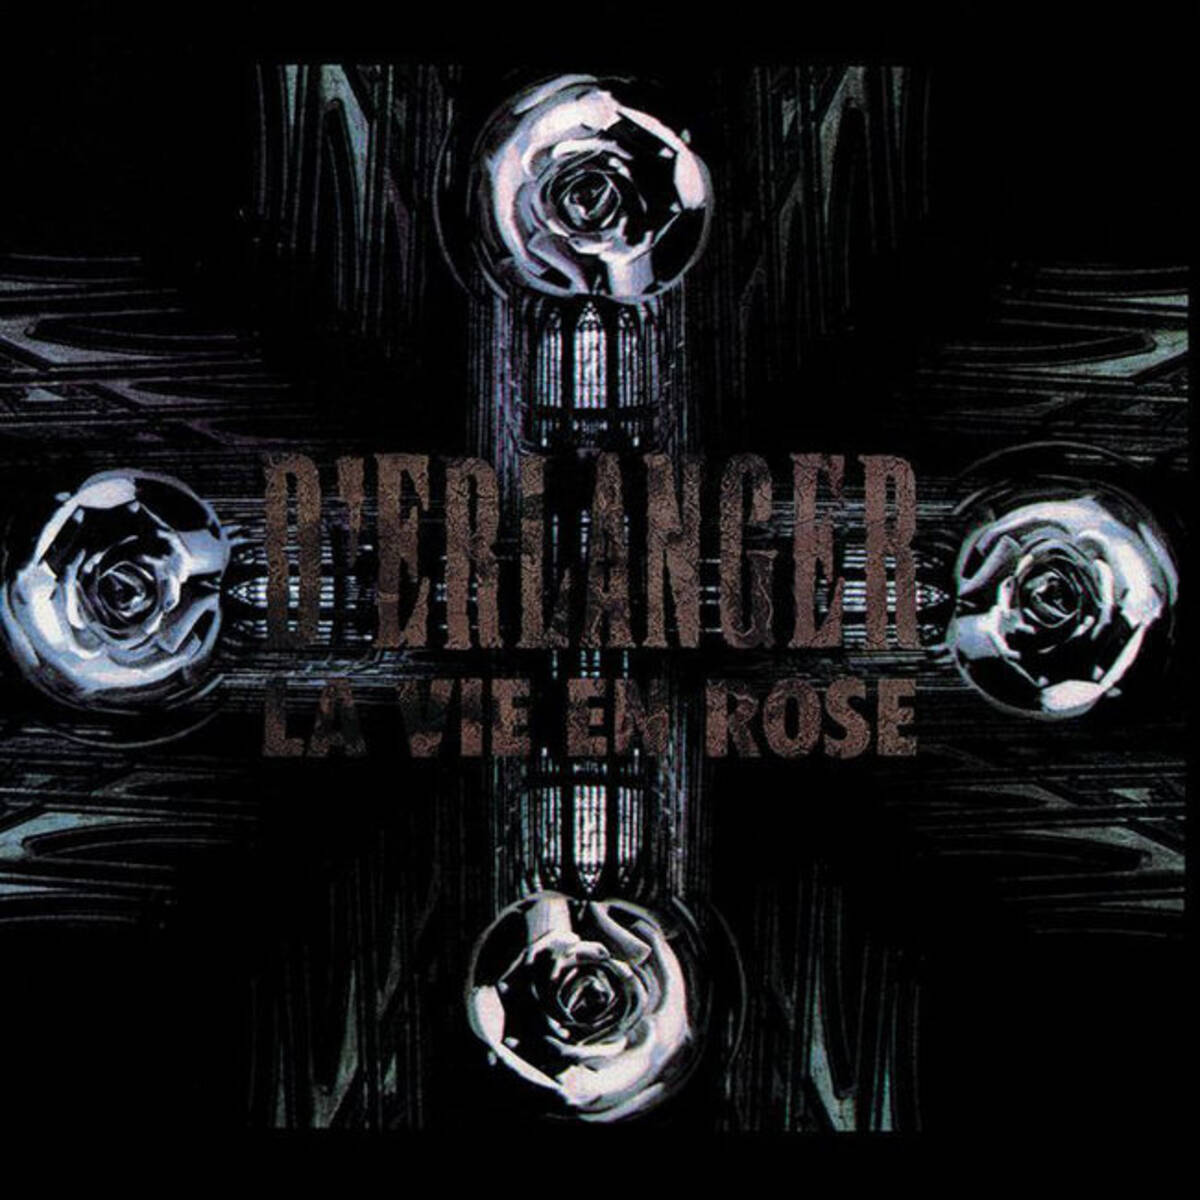 D Erlangerの起点であり バンドのスタイルが分かりやすく提示された初期作 La Vie En Rose 17年4月19日 エキサイトニュース 3 6